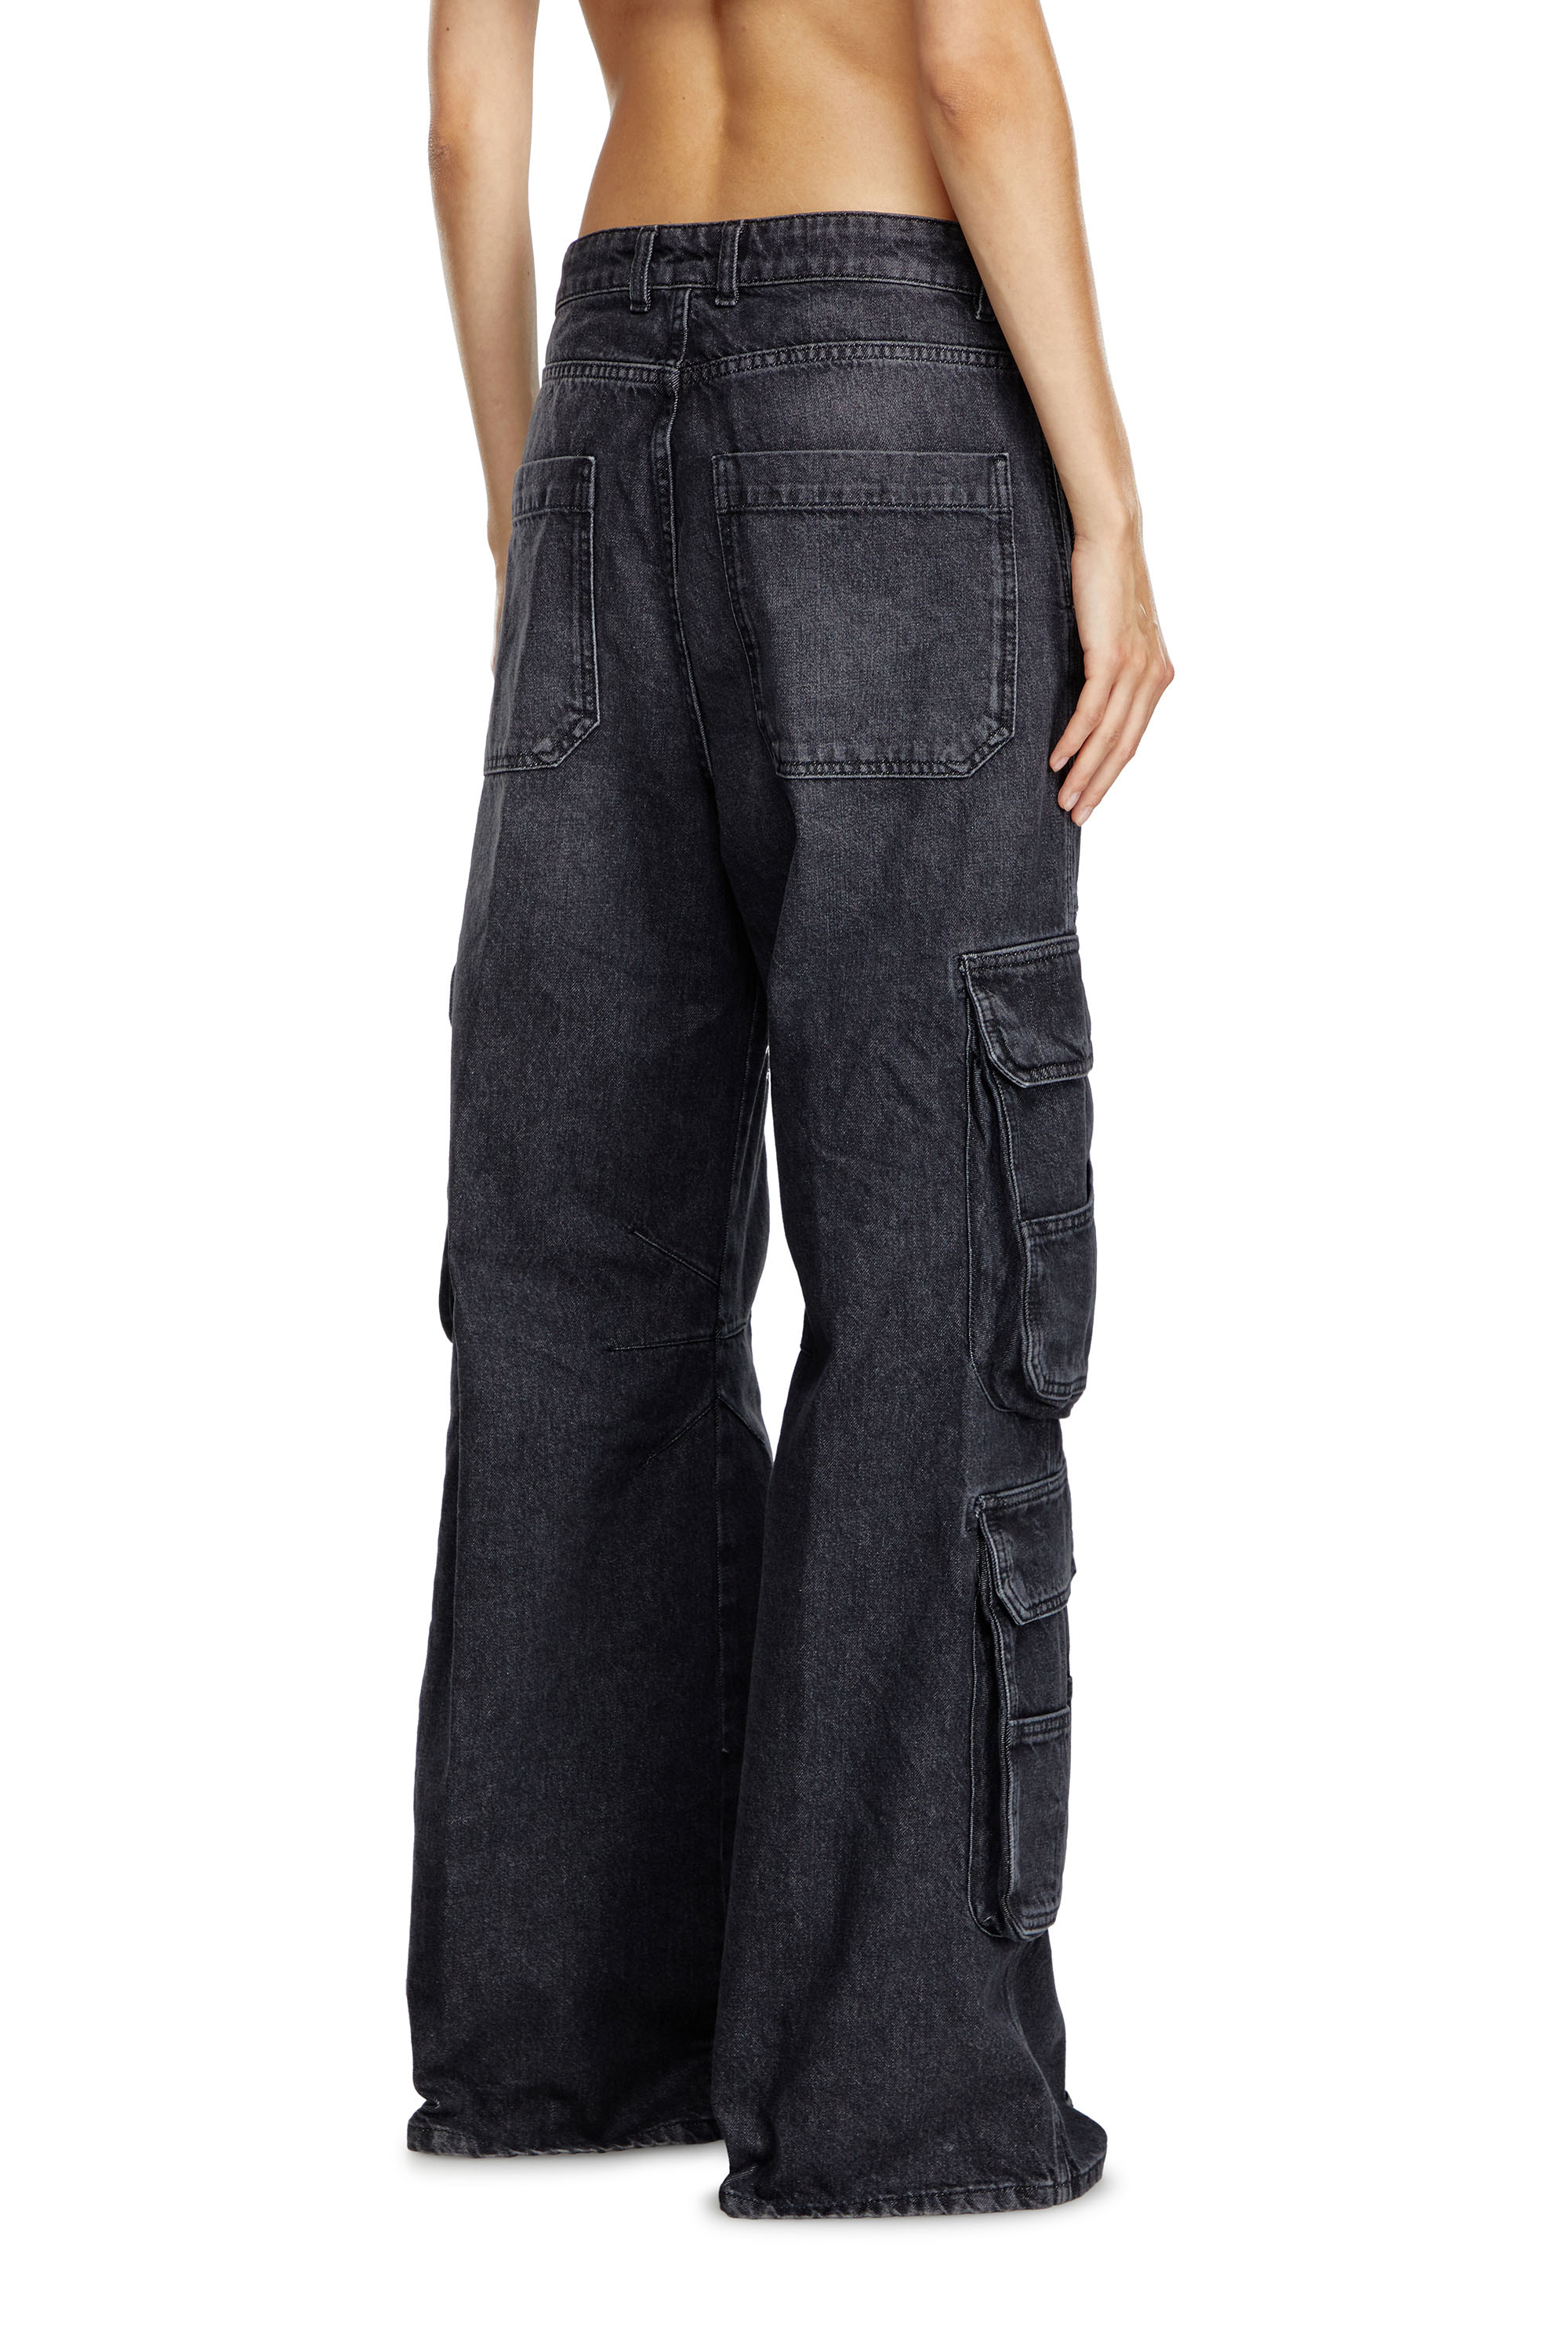 Diesel - Woman Straight Jeans 1996 D-Sire 0HLAA, Black/Dark grey - Image 3